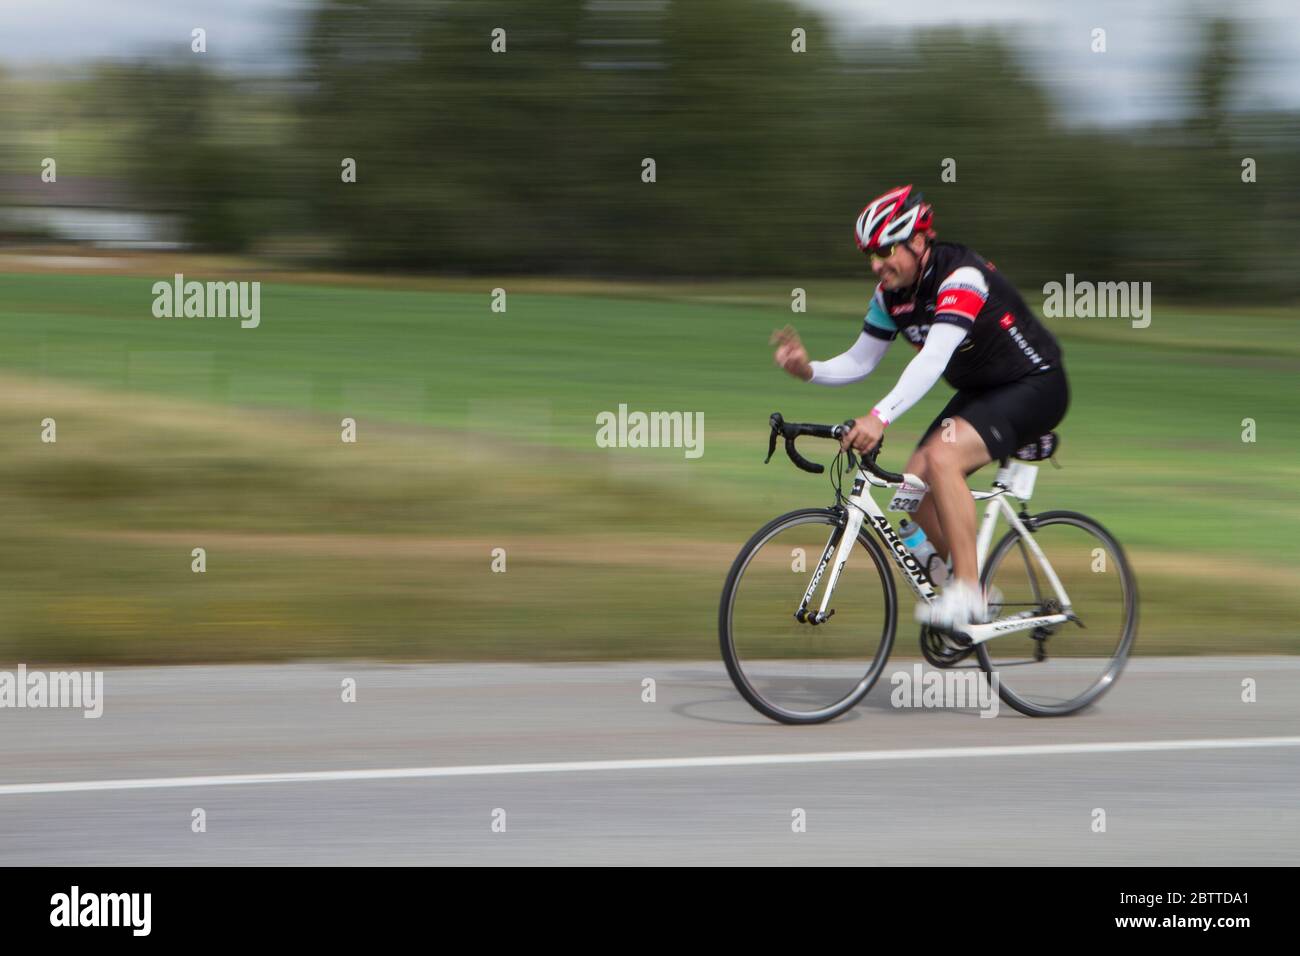 Scenic Bike Race, Einzelfahrer, in voller Rennausrüstung und Uniform. Unscharfer Hintergrund. Stockfoto